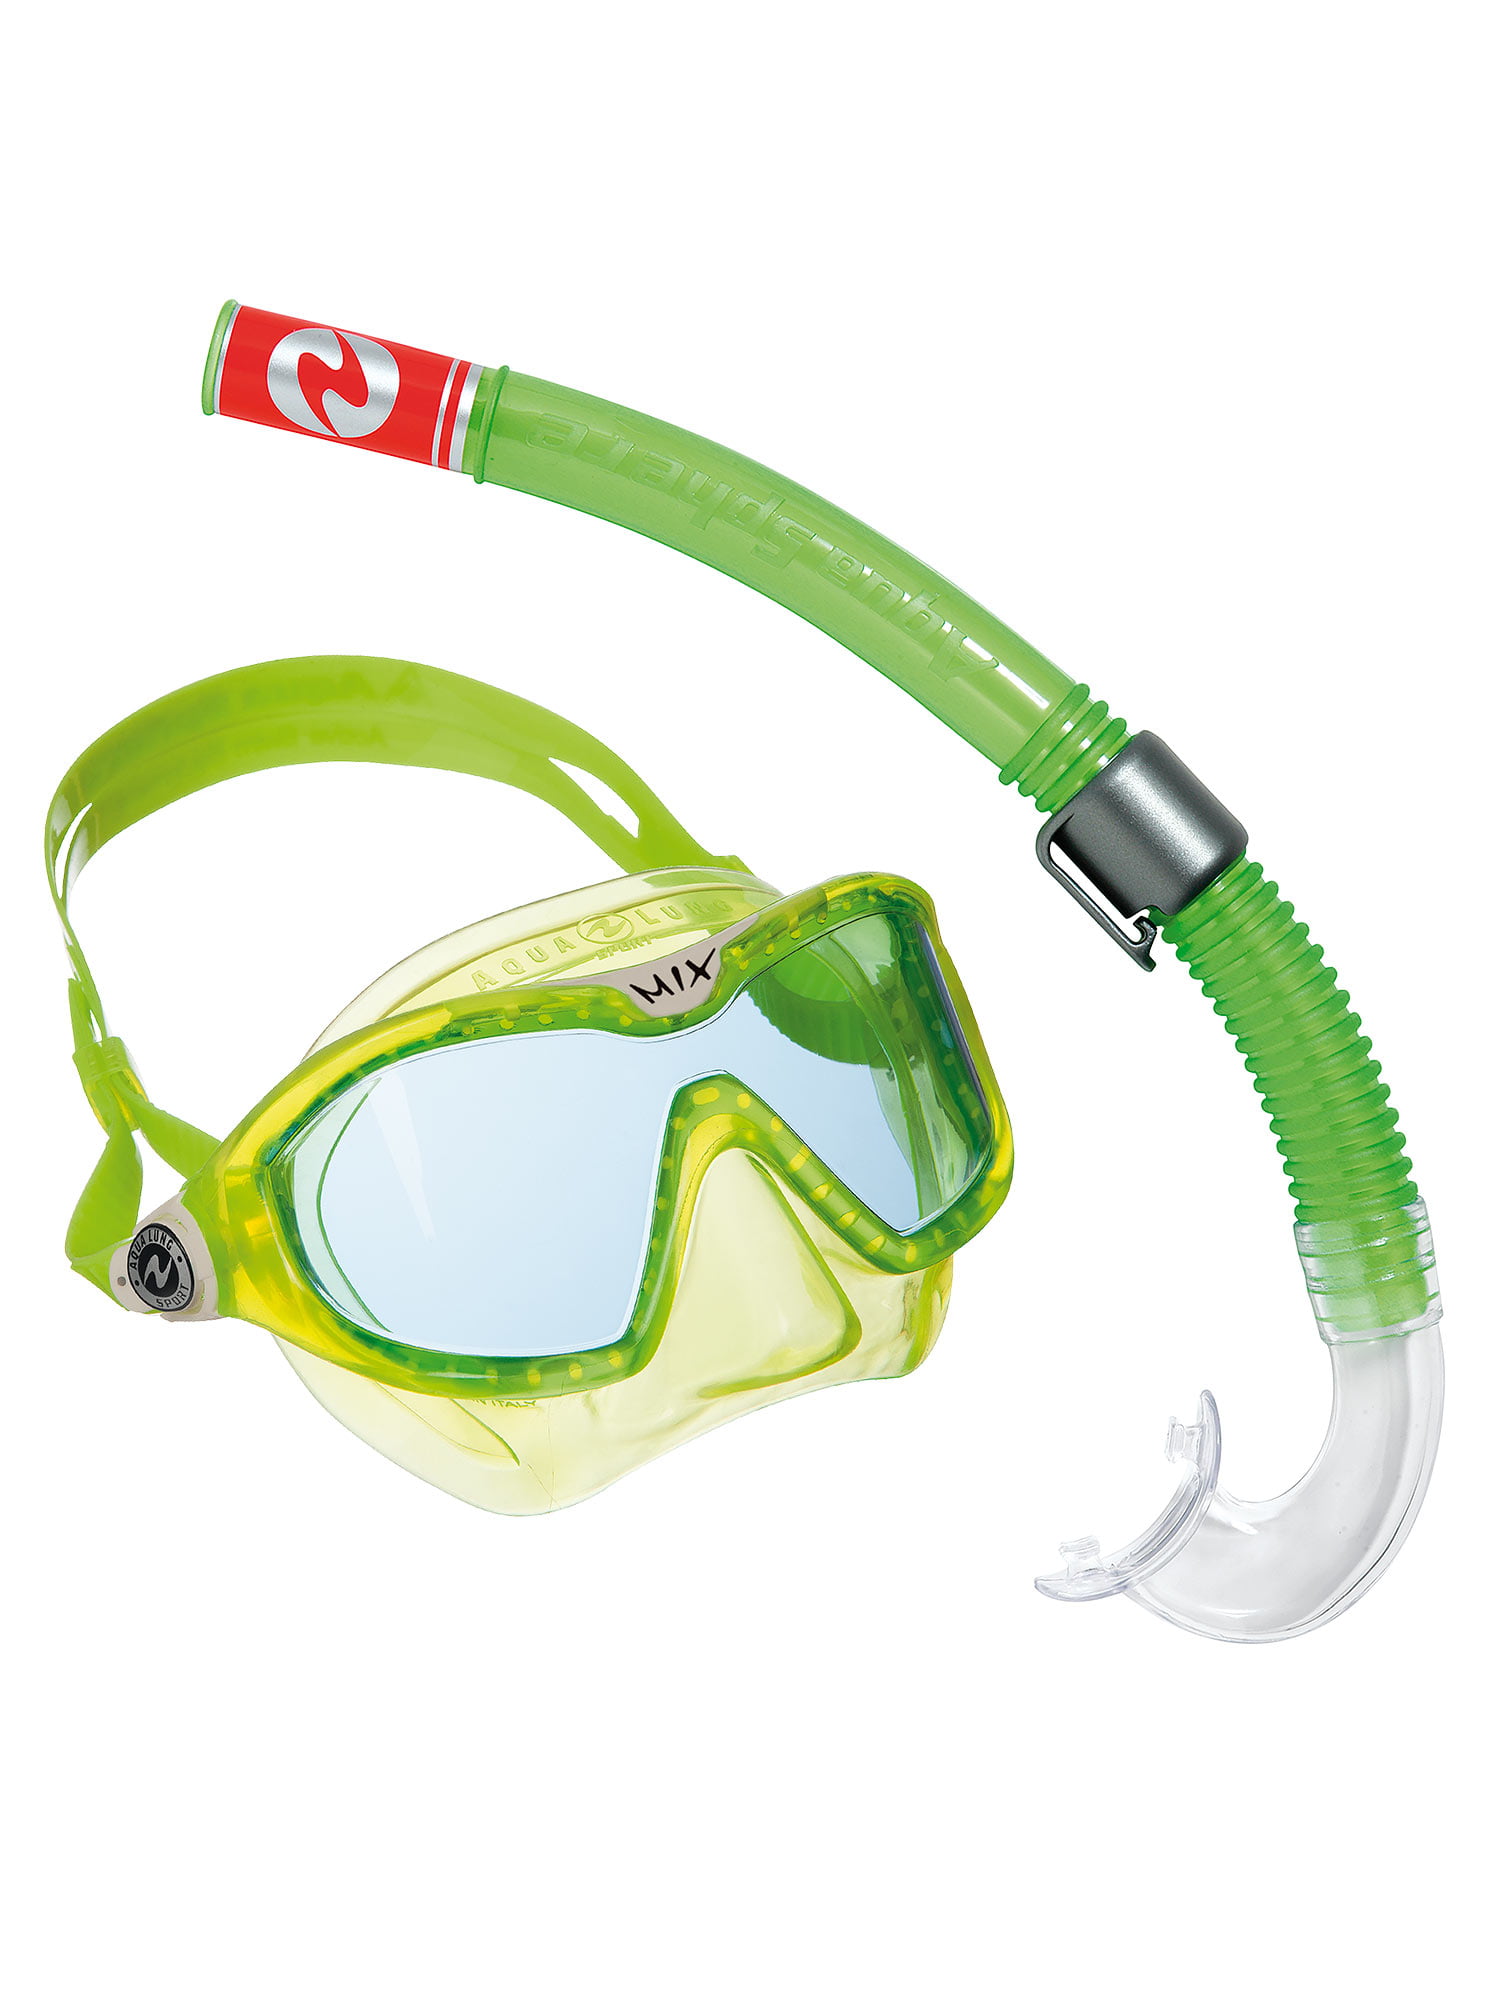 Наборы маска трубка. Маска Aqualung Sport Mix. Aqua lung Sport маска трубка. Детская маска для плавания Aqua lung. Комплект для подводного плавания детский sw1705107.